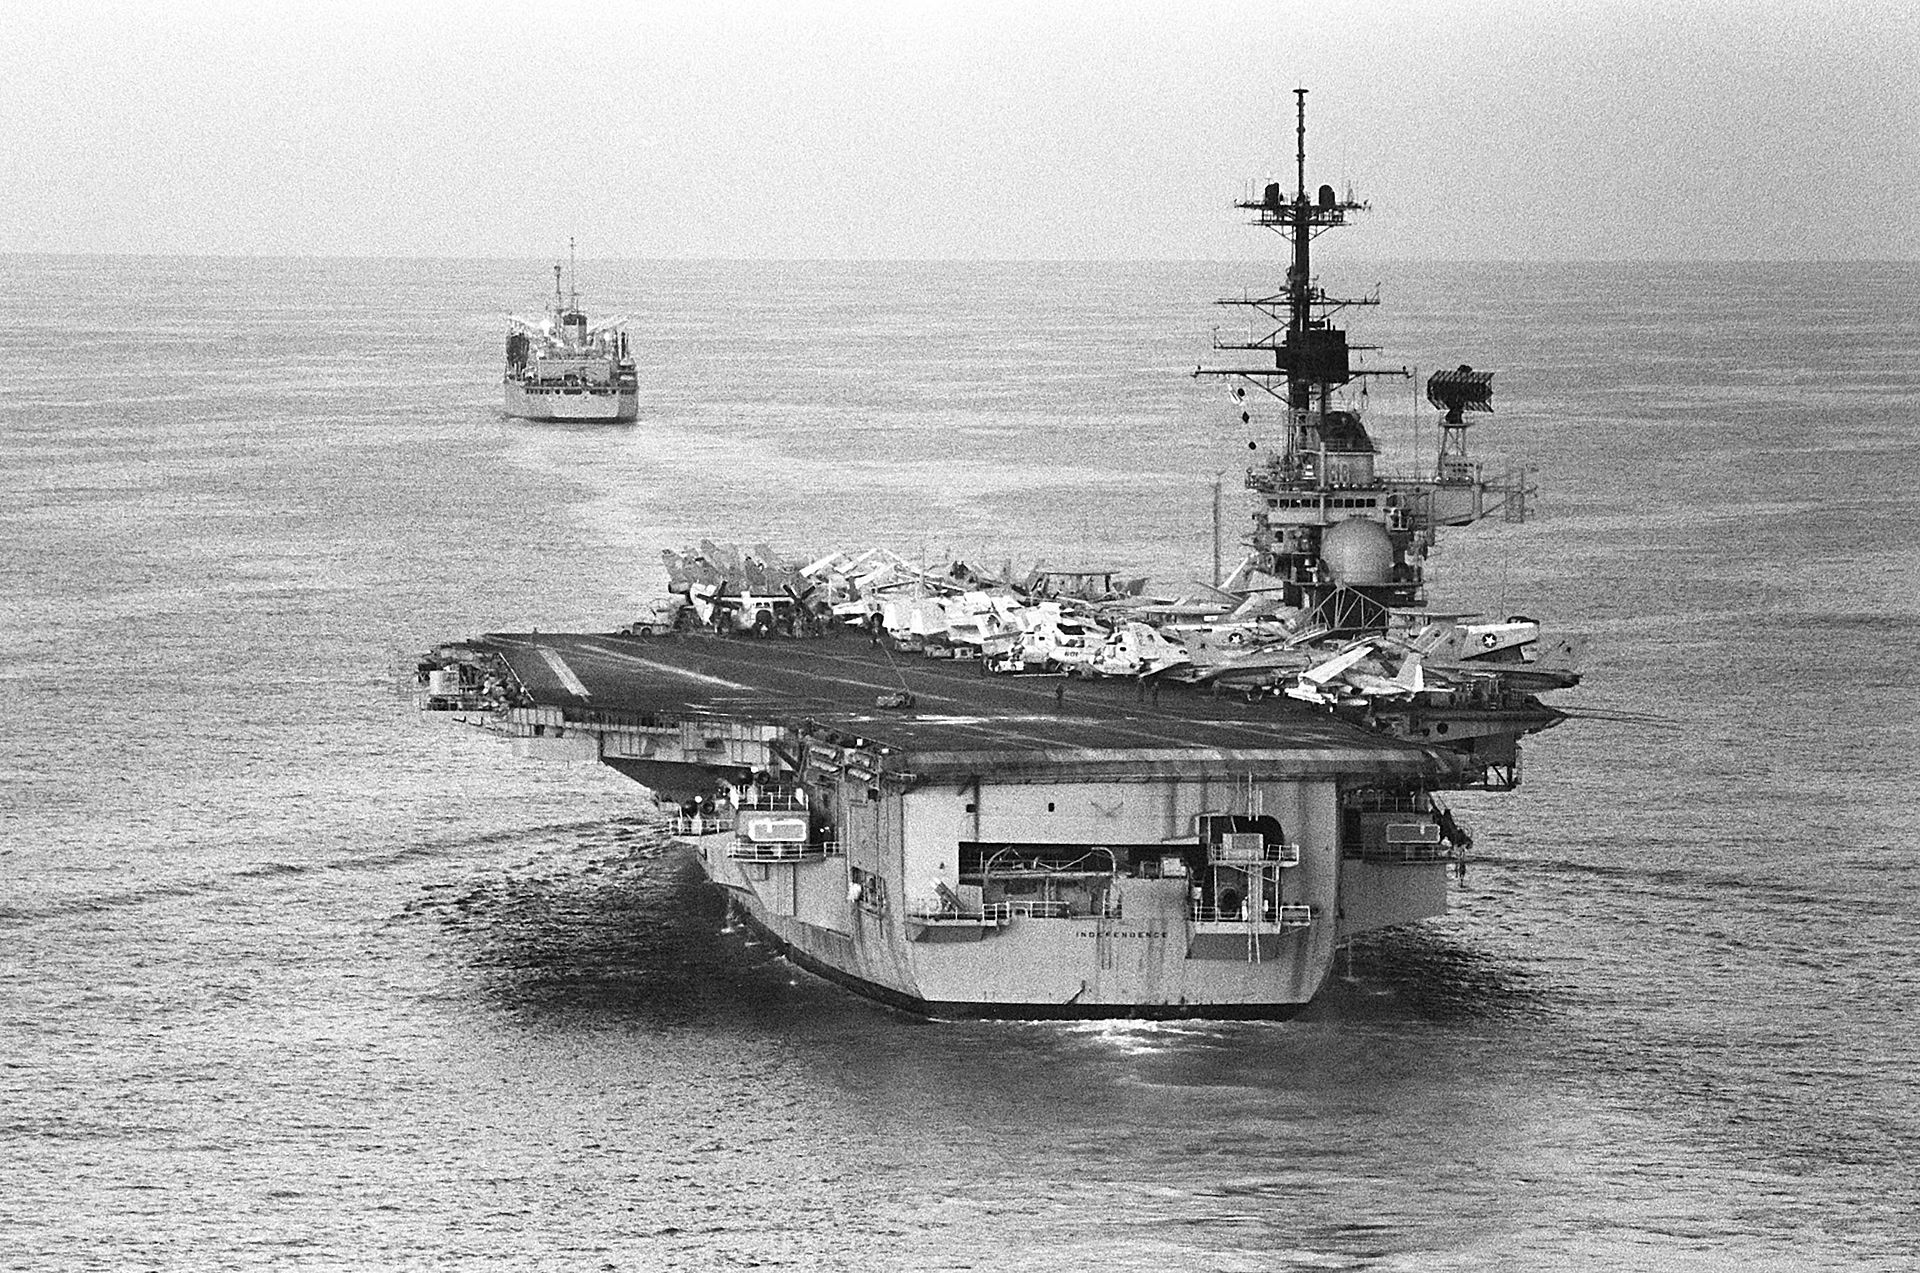 USS_Independence_(CV-62)_underway_in_the_Mediterranean_Sea_on_8_December_1983